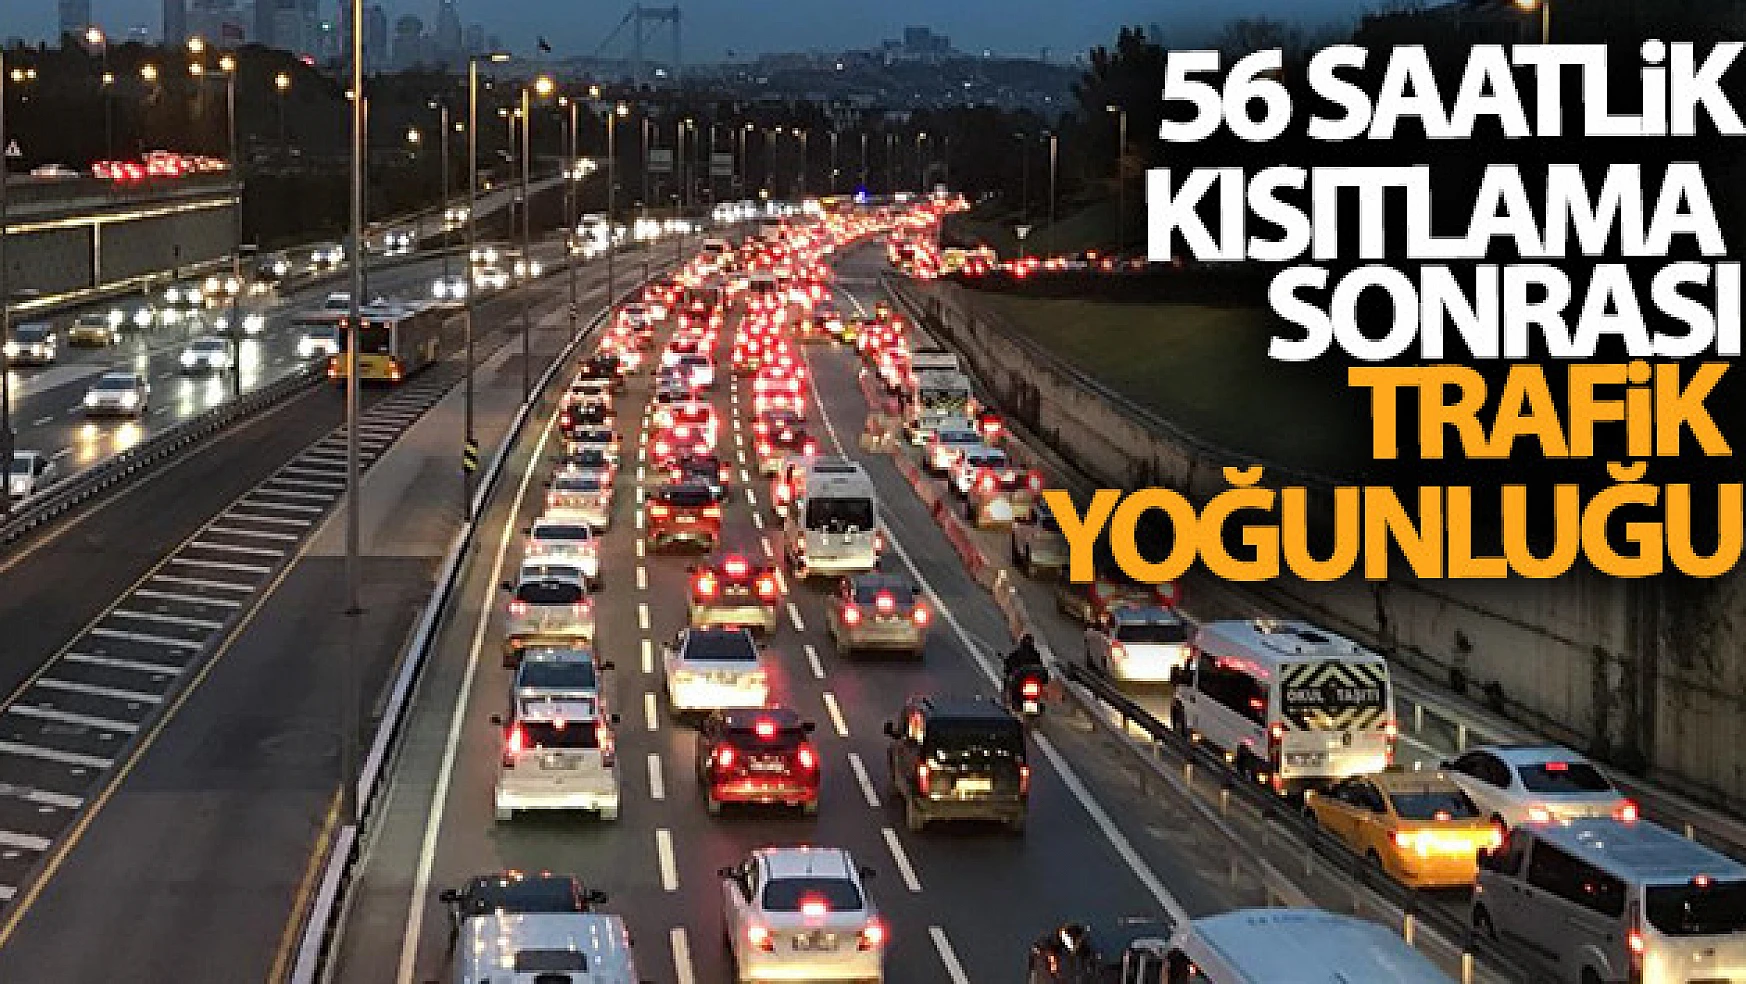 56 saatlik kısıtlama sonrası 15 Temmuz Şehitler Köprüsü'nde trafik yoğunluğu!